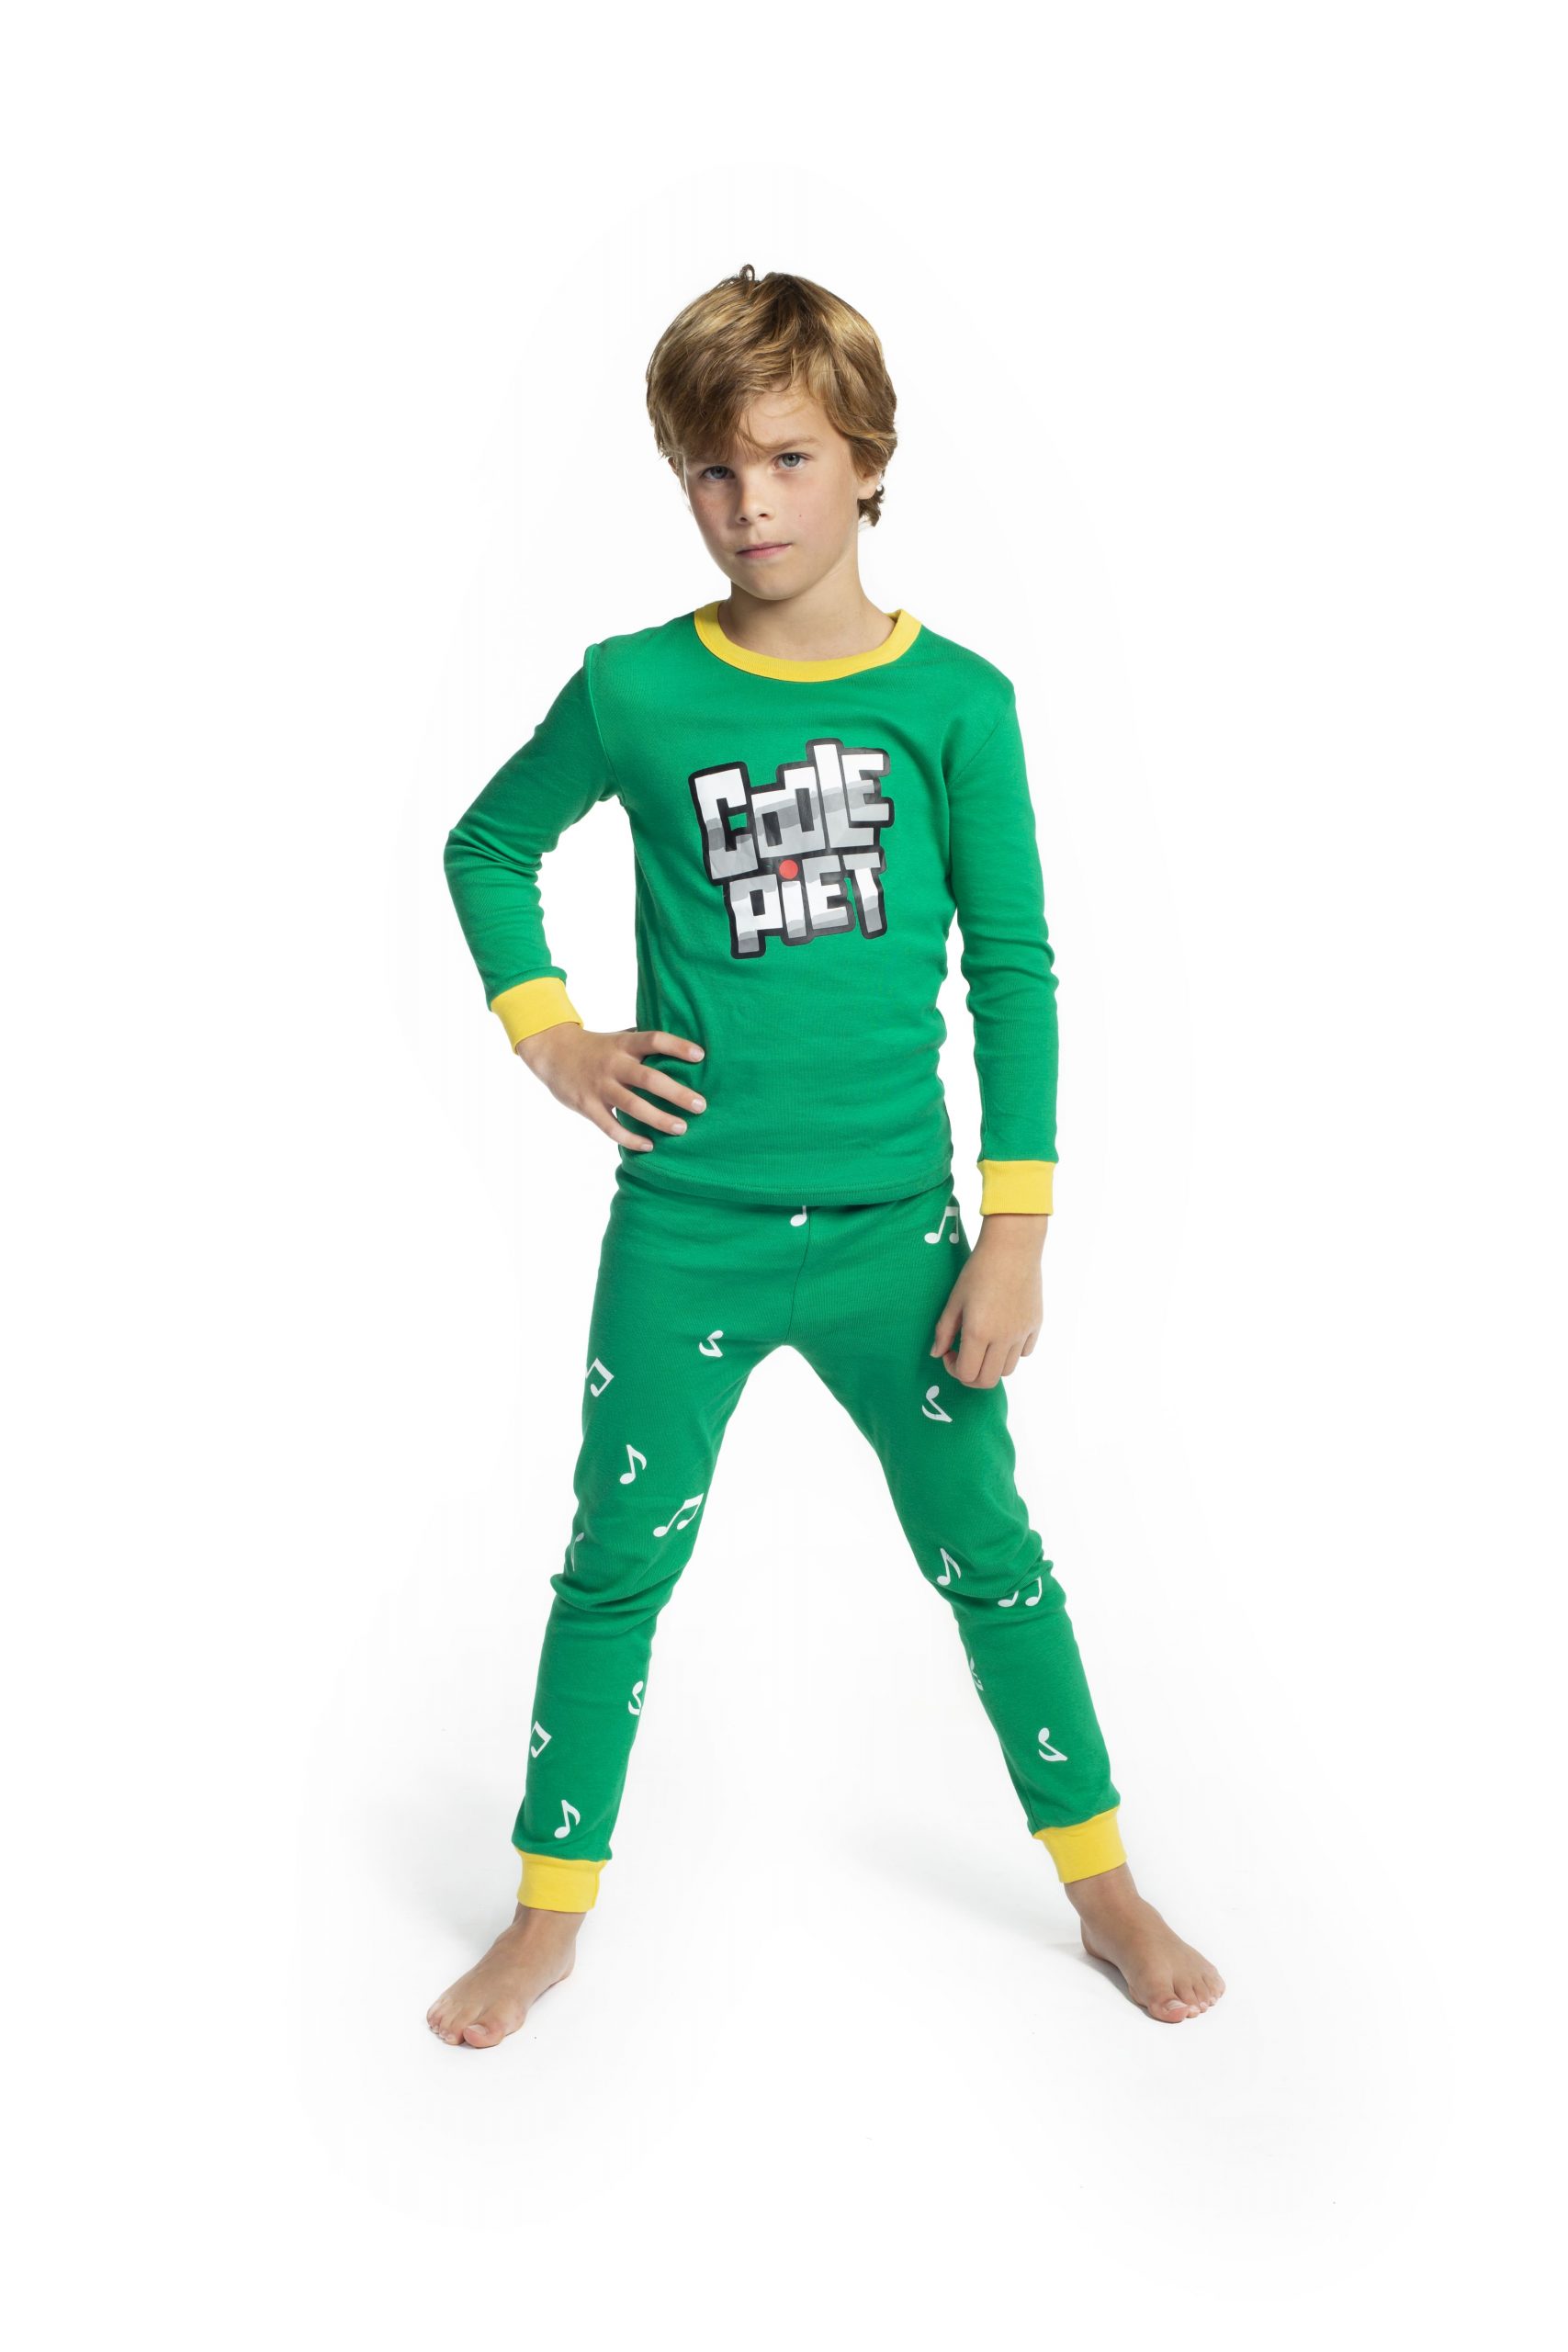 Coole Piet pyjama - De Club Sinterklaas